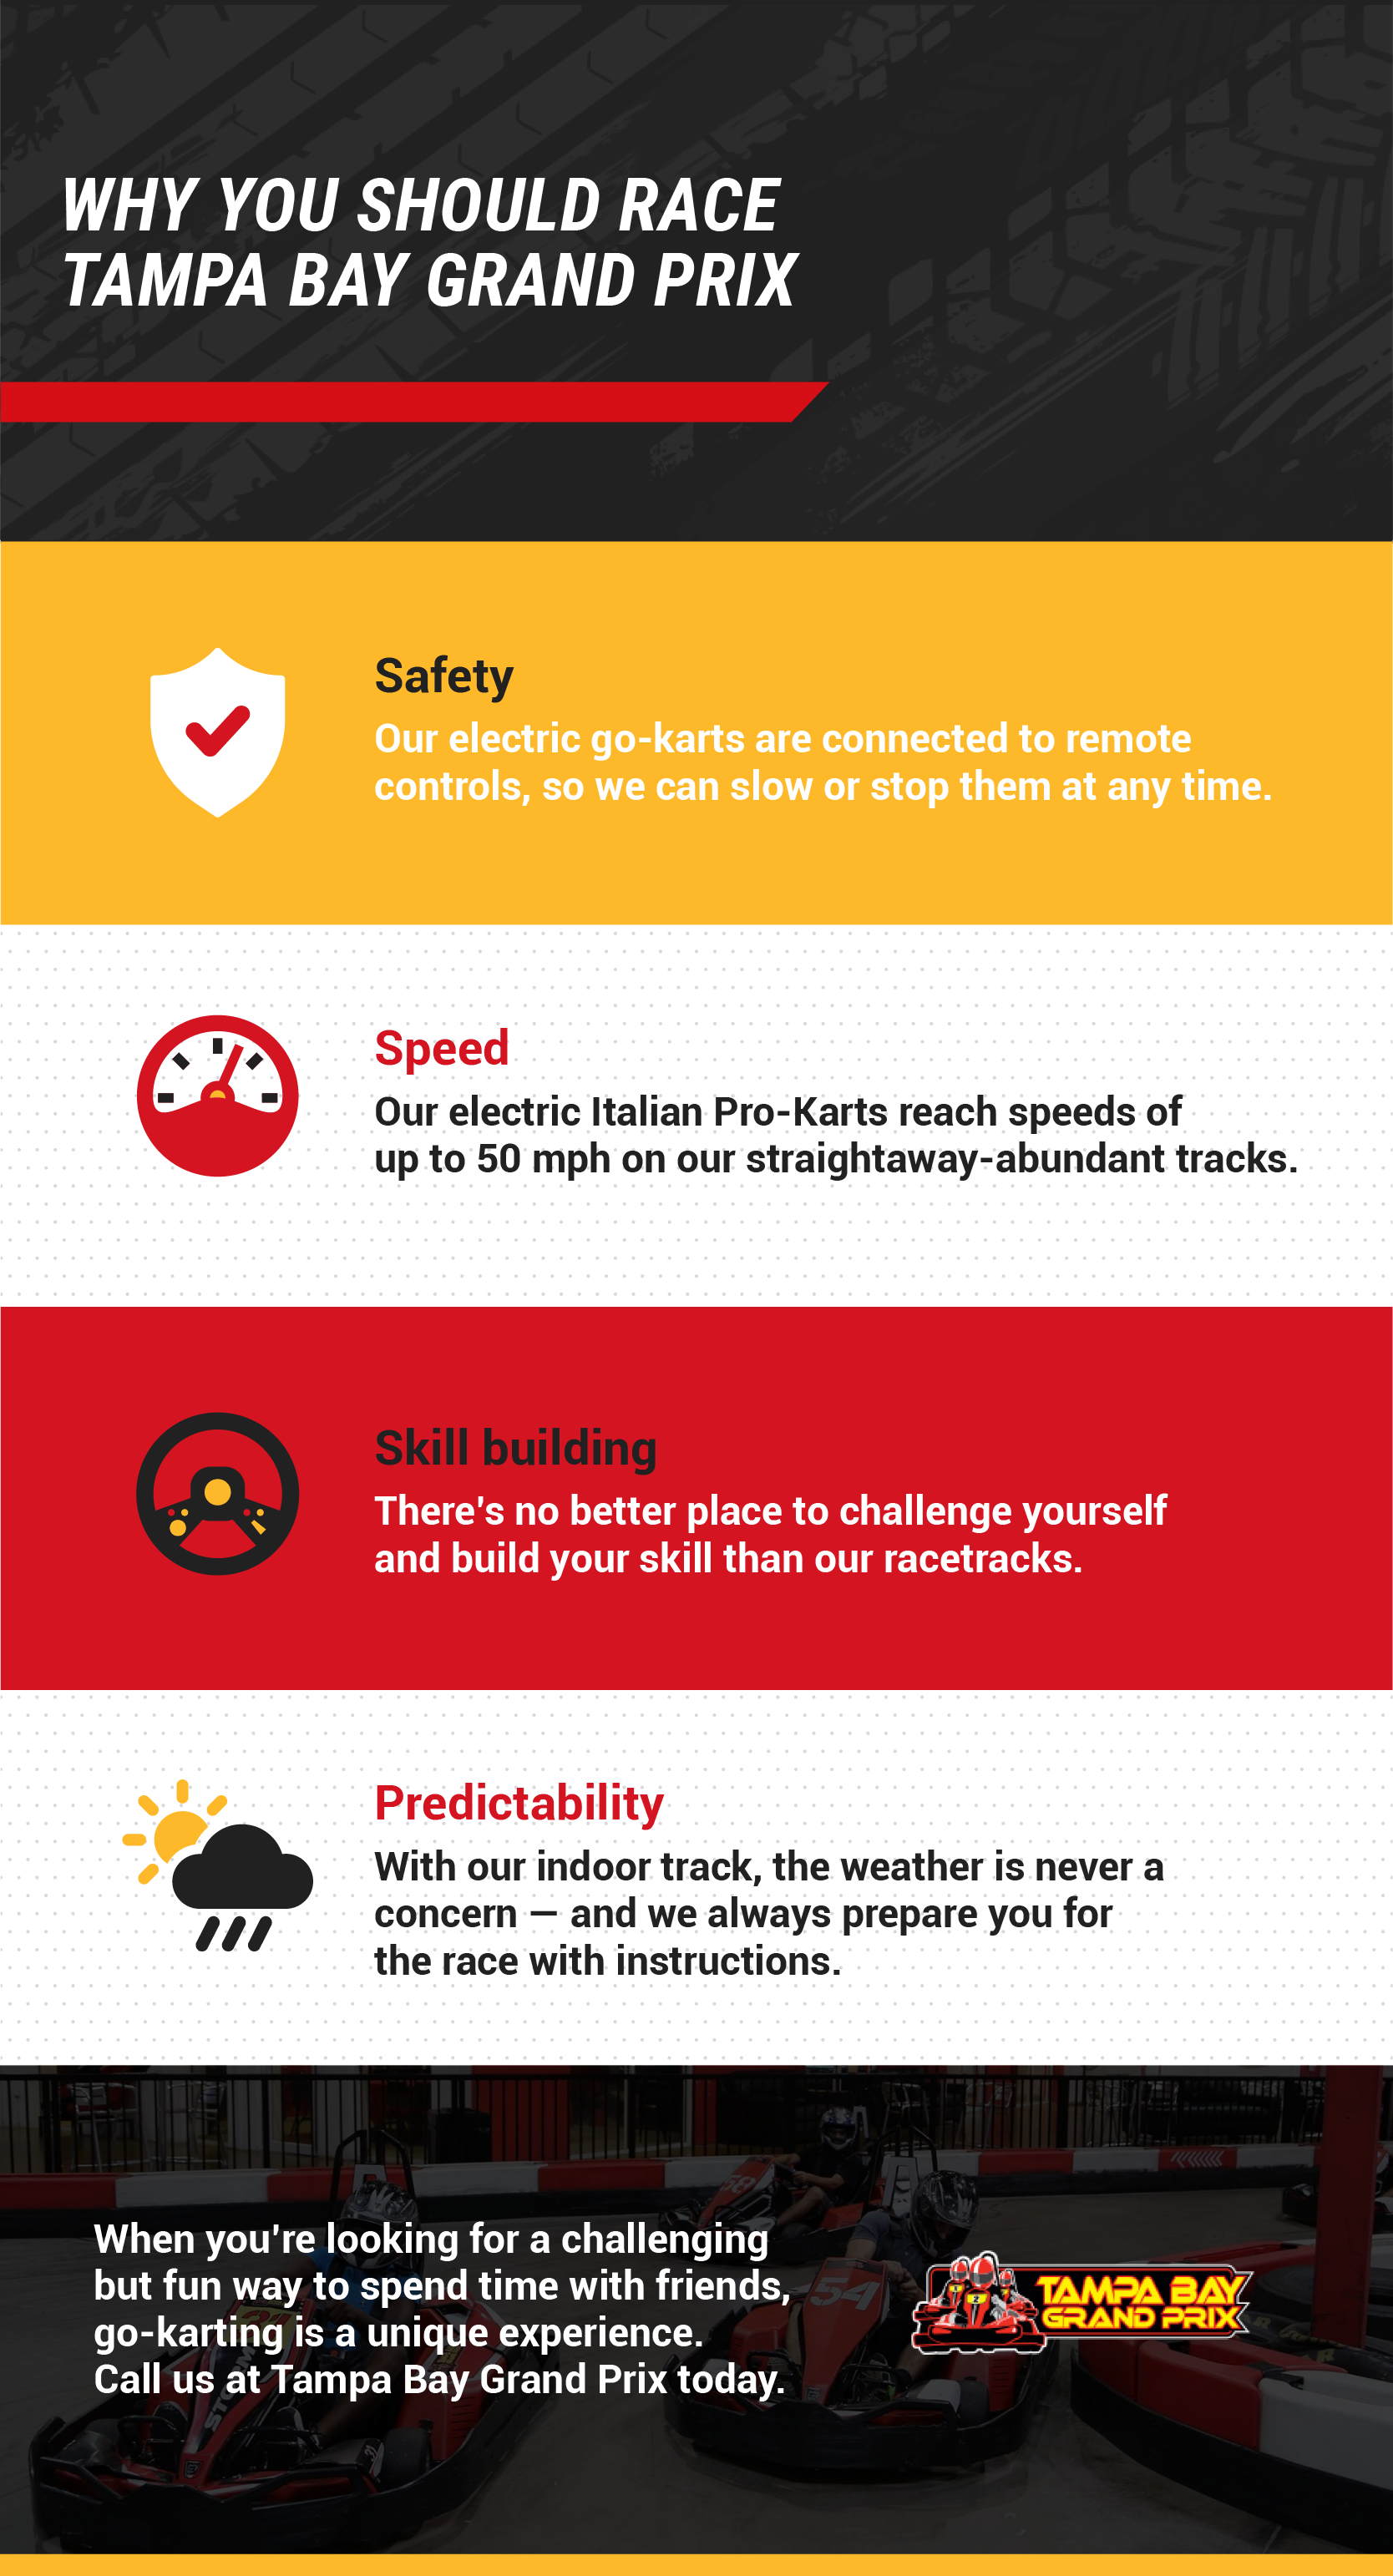 Go-Kart Speed Basics- Maximum Speed and Safety Tips - Lehigh